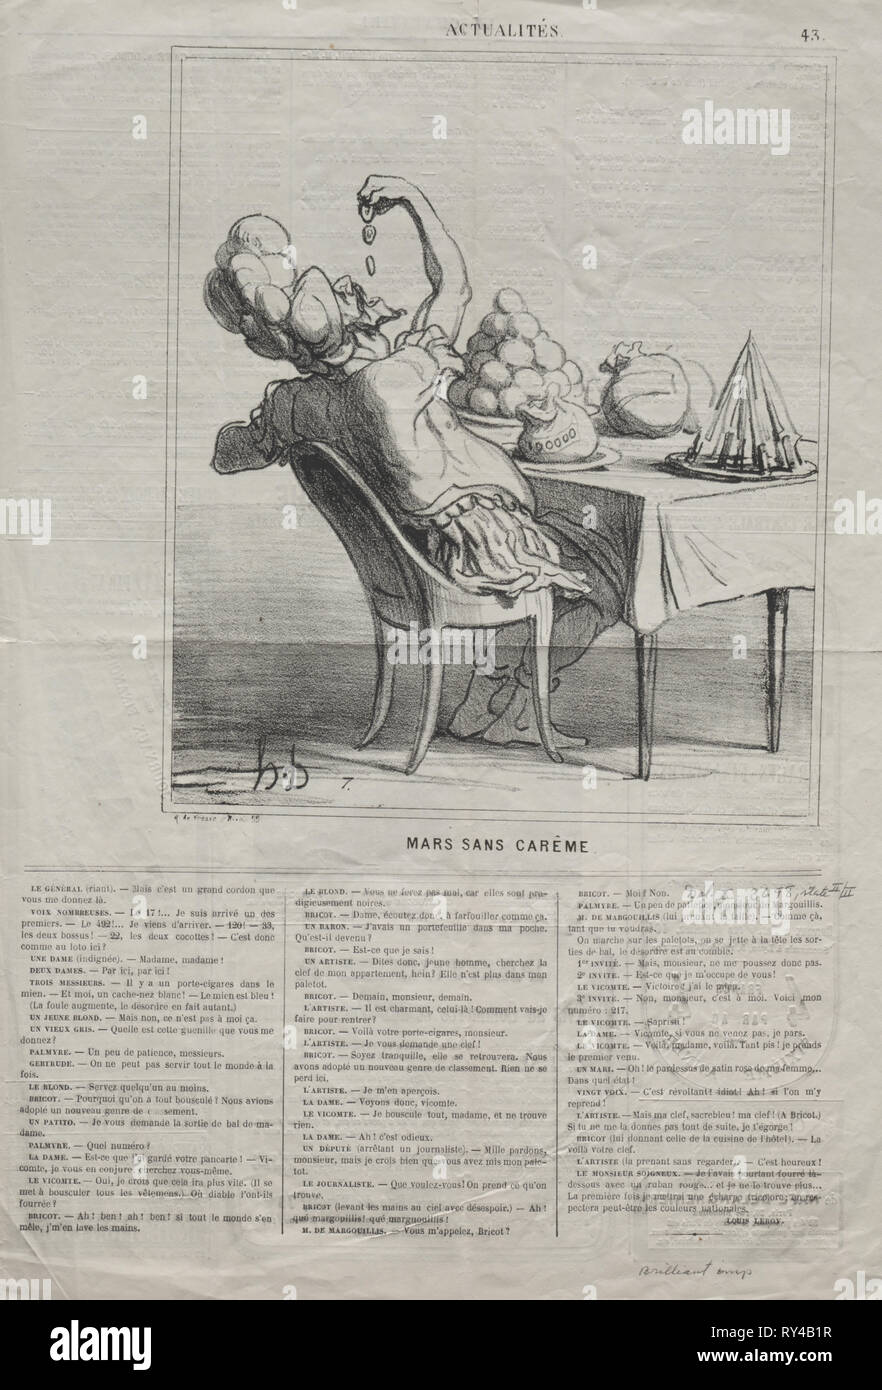 Publié dans Le Charivari (12 mars 1869) : Actualités (No. 43) : mars sans le Carême, 1869. Honoré Daumier (Français, 1808-1879). Fiche technique : Lithographie ; 44,2 x 61,5 cm (17 3/8 x 24 3/16 po.) ; image : 24,1 x 20,7 cm (9 1/2 x 8 1/8 in Banque D'Images